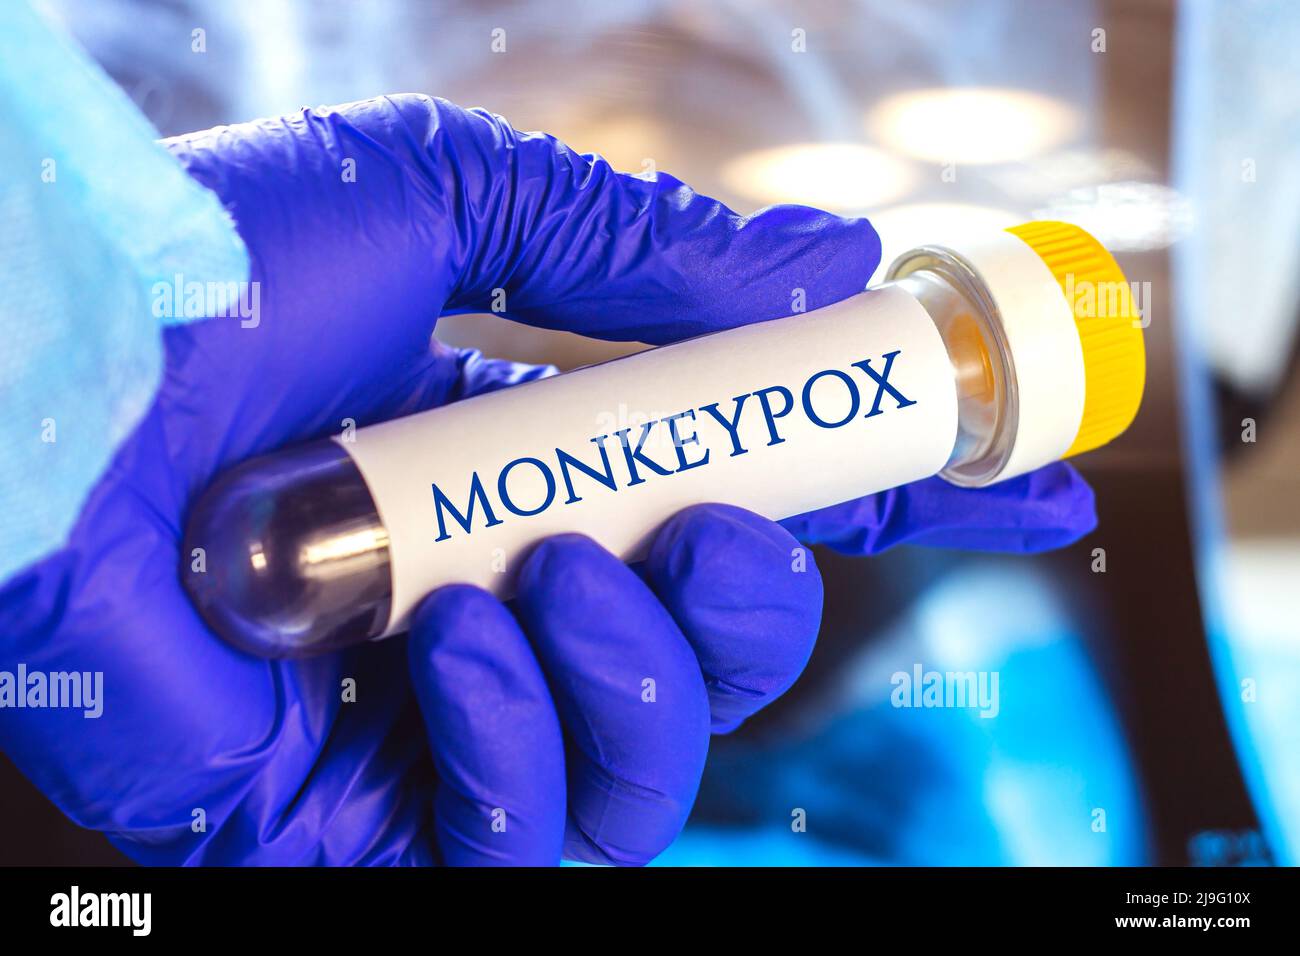 Nuovo campione infettivo della malattia del virus Monkeypox in provetta da laboratorio nella mano dello scienziato in guanto medico blu su sfondo chiaro. Foto Stock